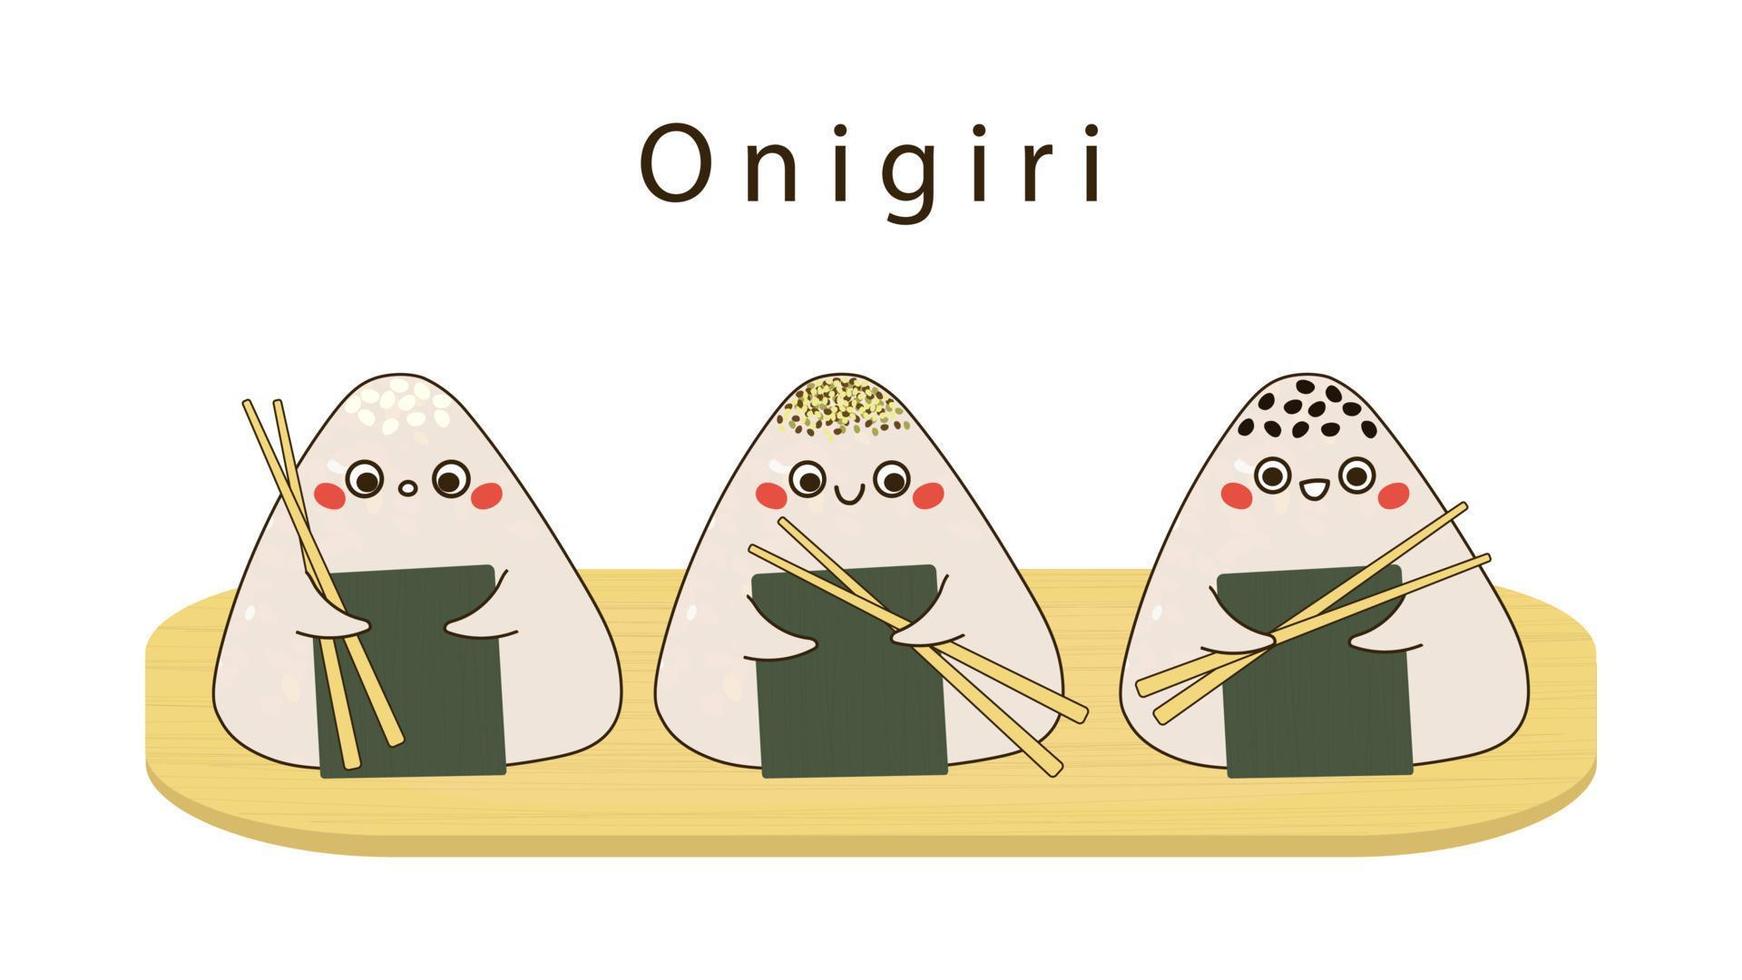 personnages onigiri avec des baguettes dans les mains illustration vectorielle vecteur